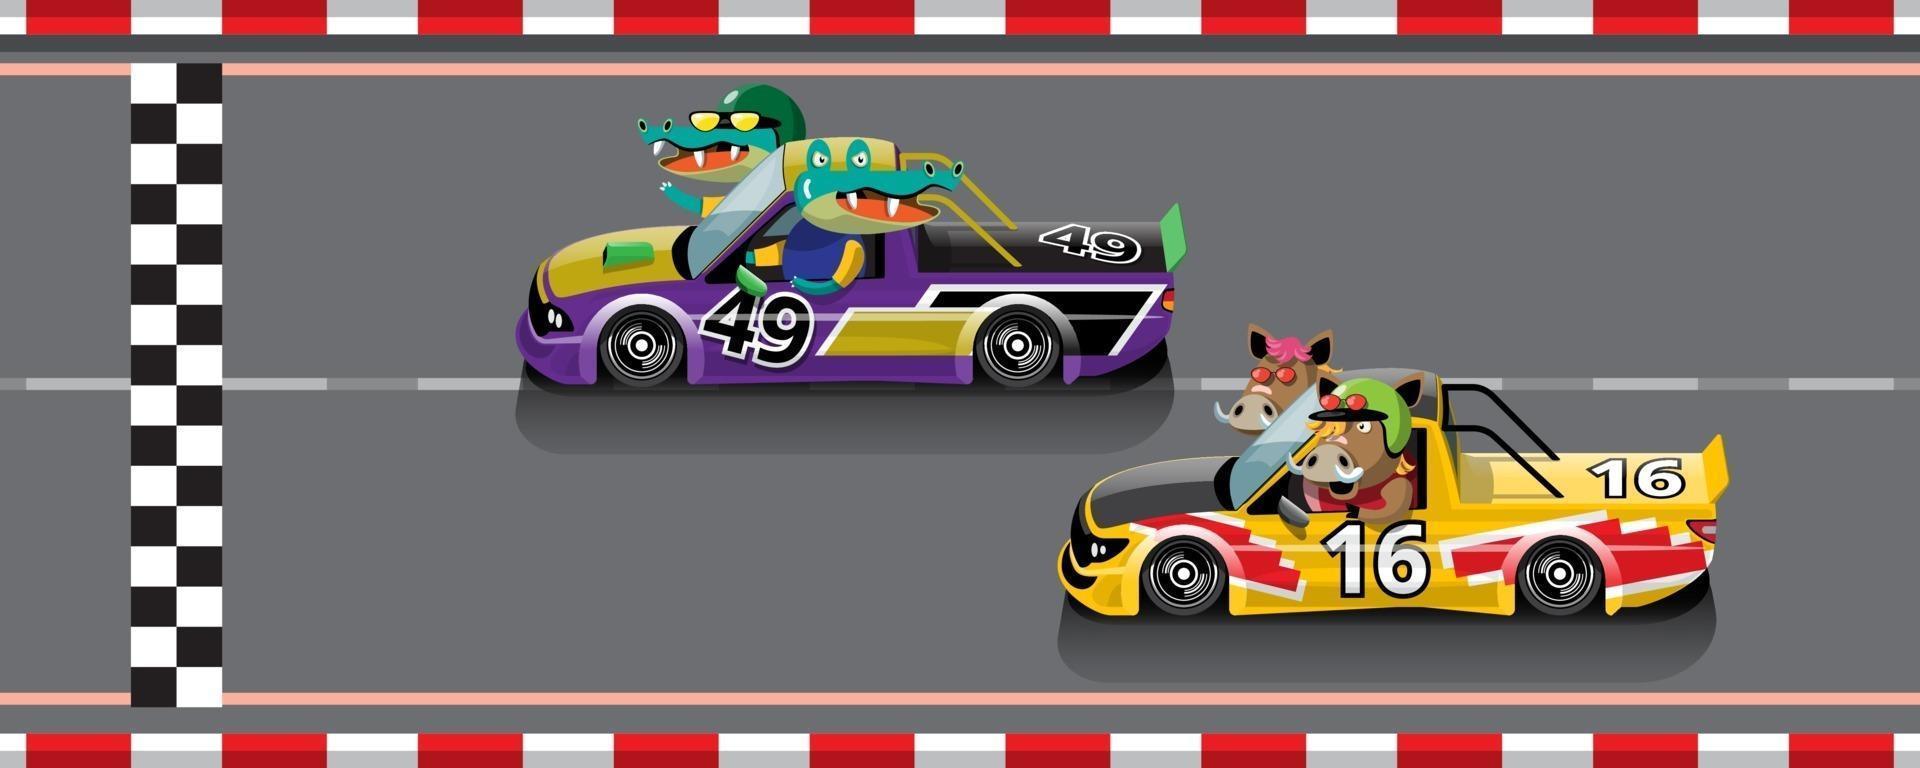 dans la compétition de jeu continuez le joueur a utilisé une voiture à grande vitesse pour gagner dans le jeu de course. compétition de course automobile e-sport. vecteur